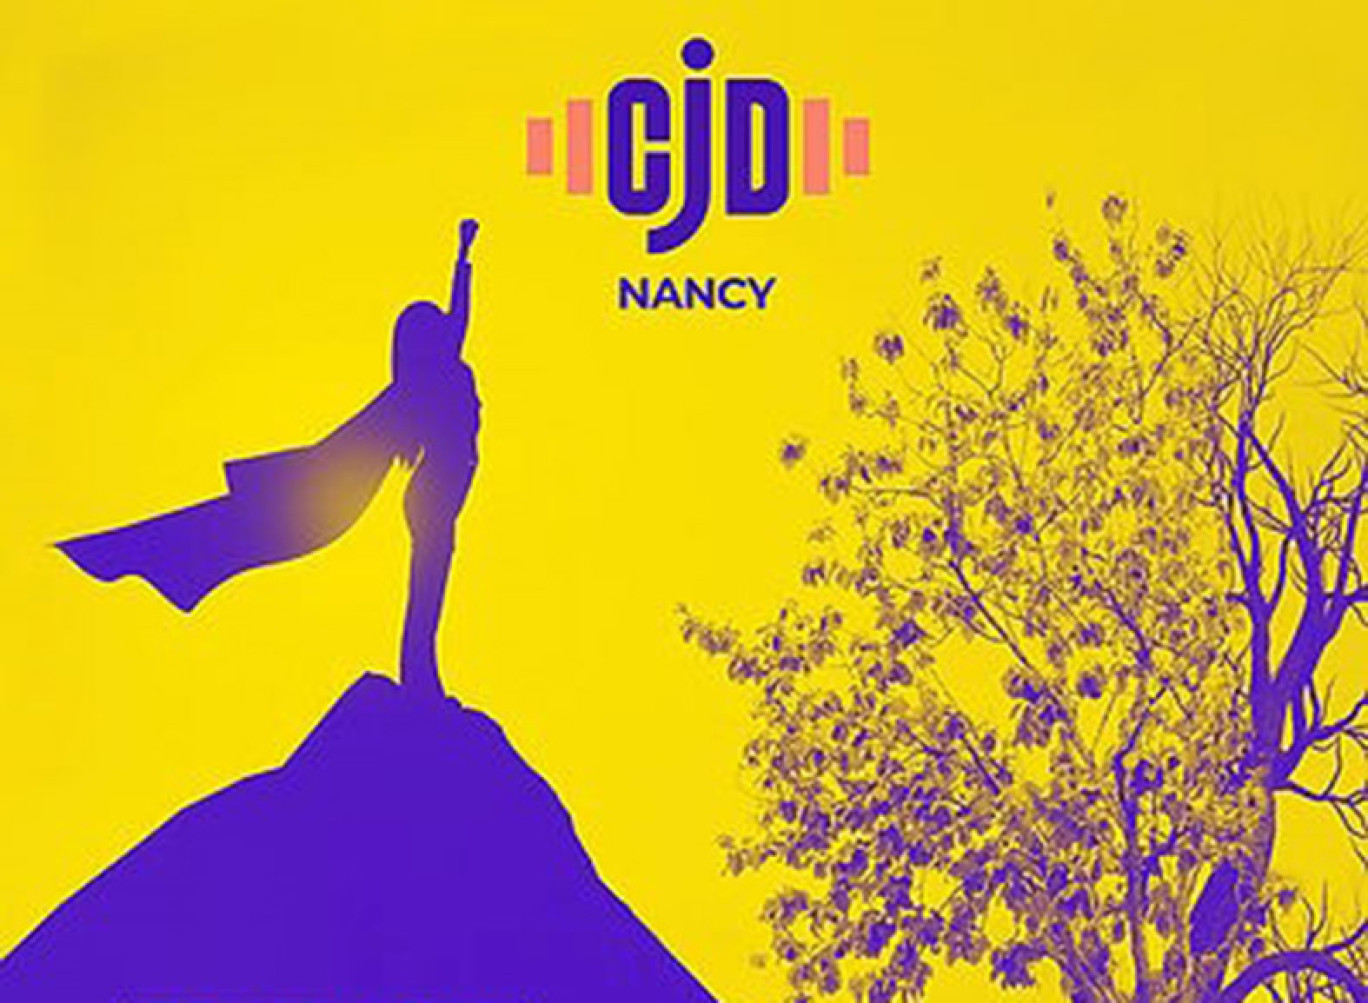 Quand l’impossible devient possible ! Mot d’ordre affiché de la future soirée Prestige du CJD Nancy le 30 juin prochain à l’Opéra national de Lorraine de Nancy.